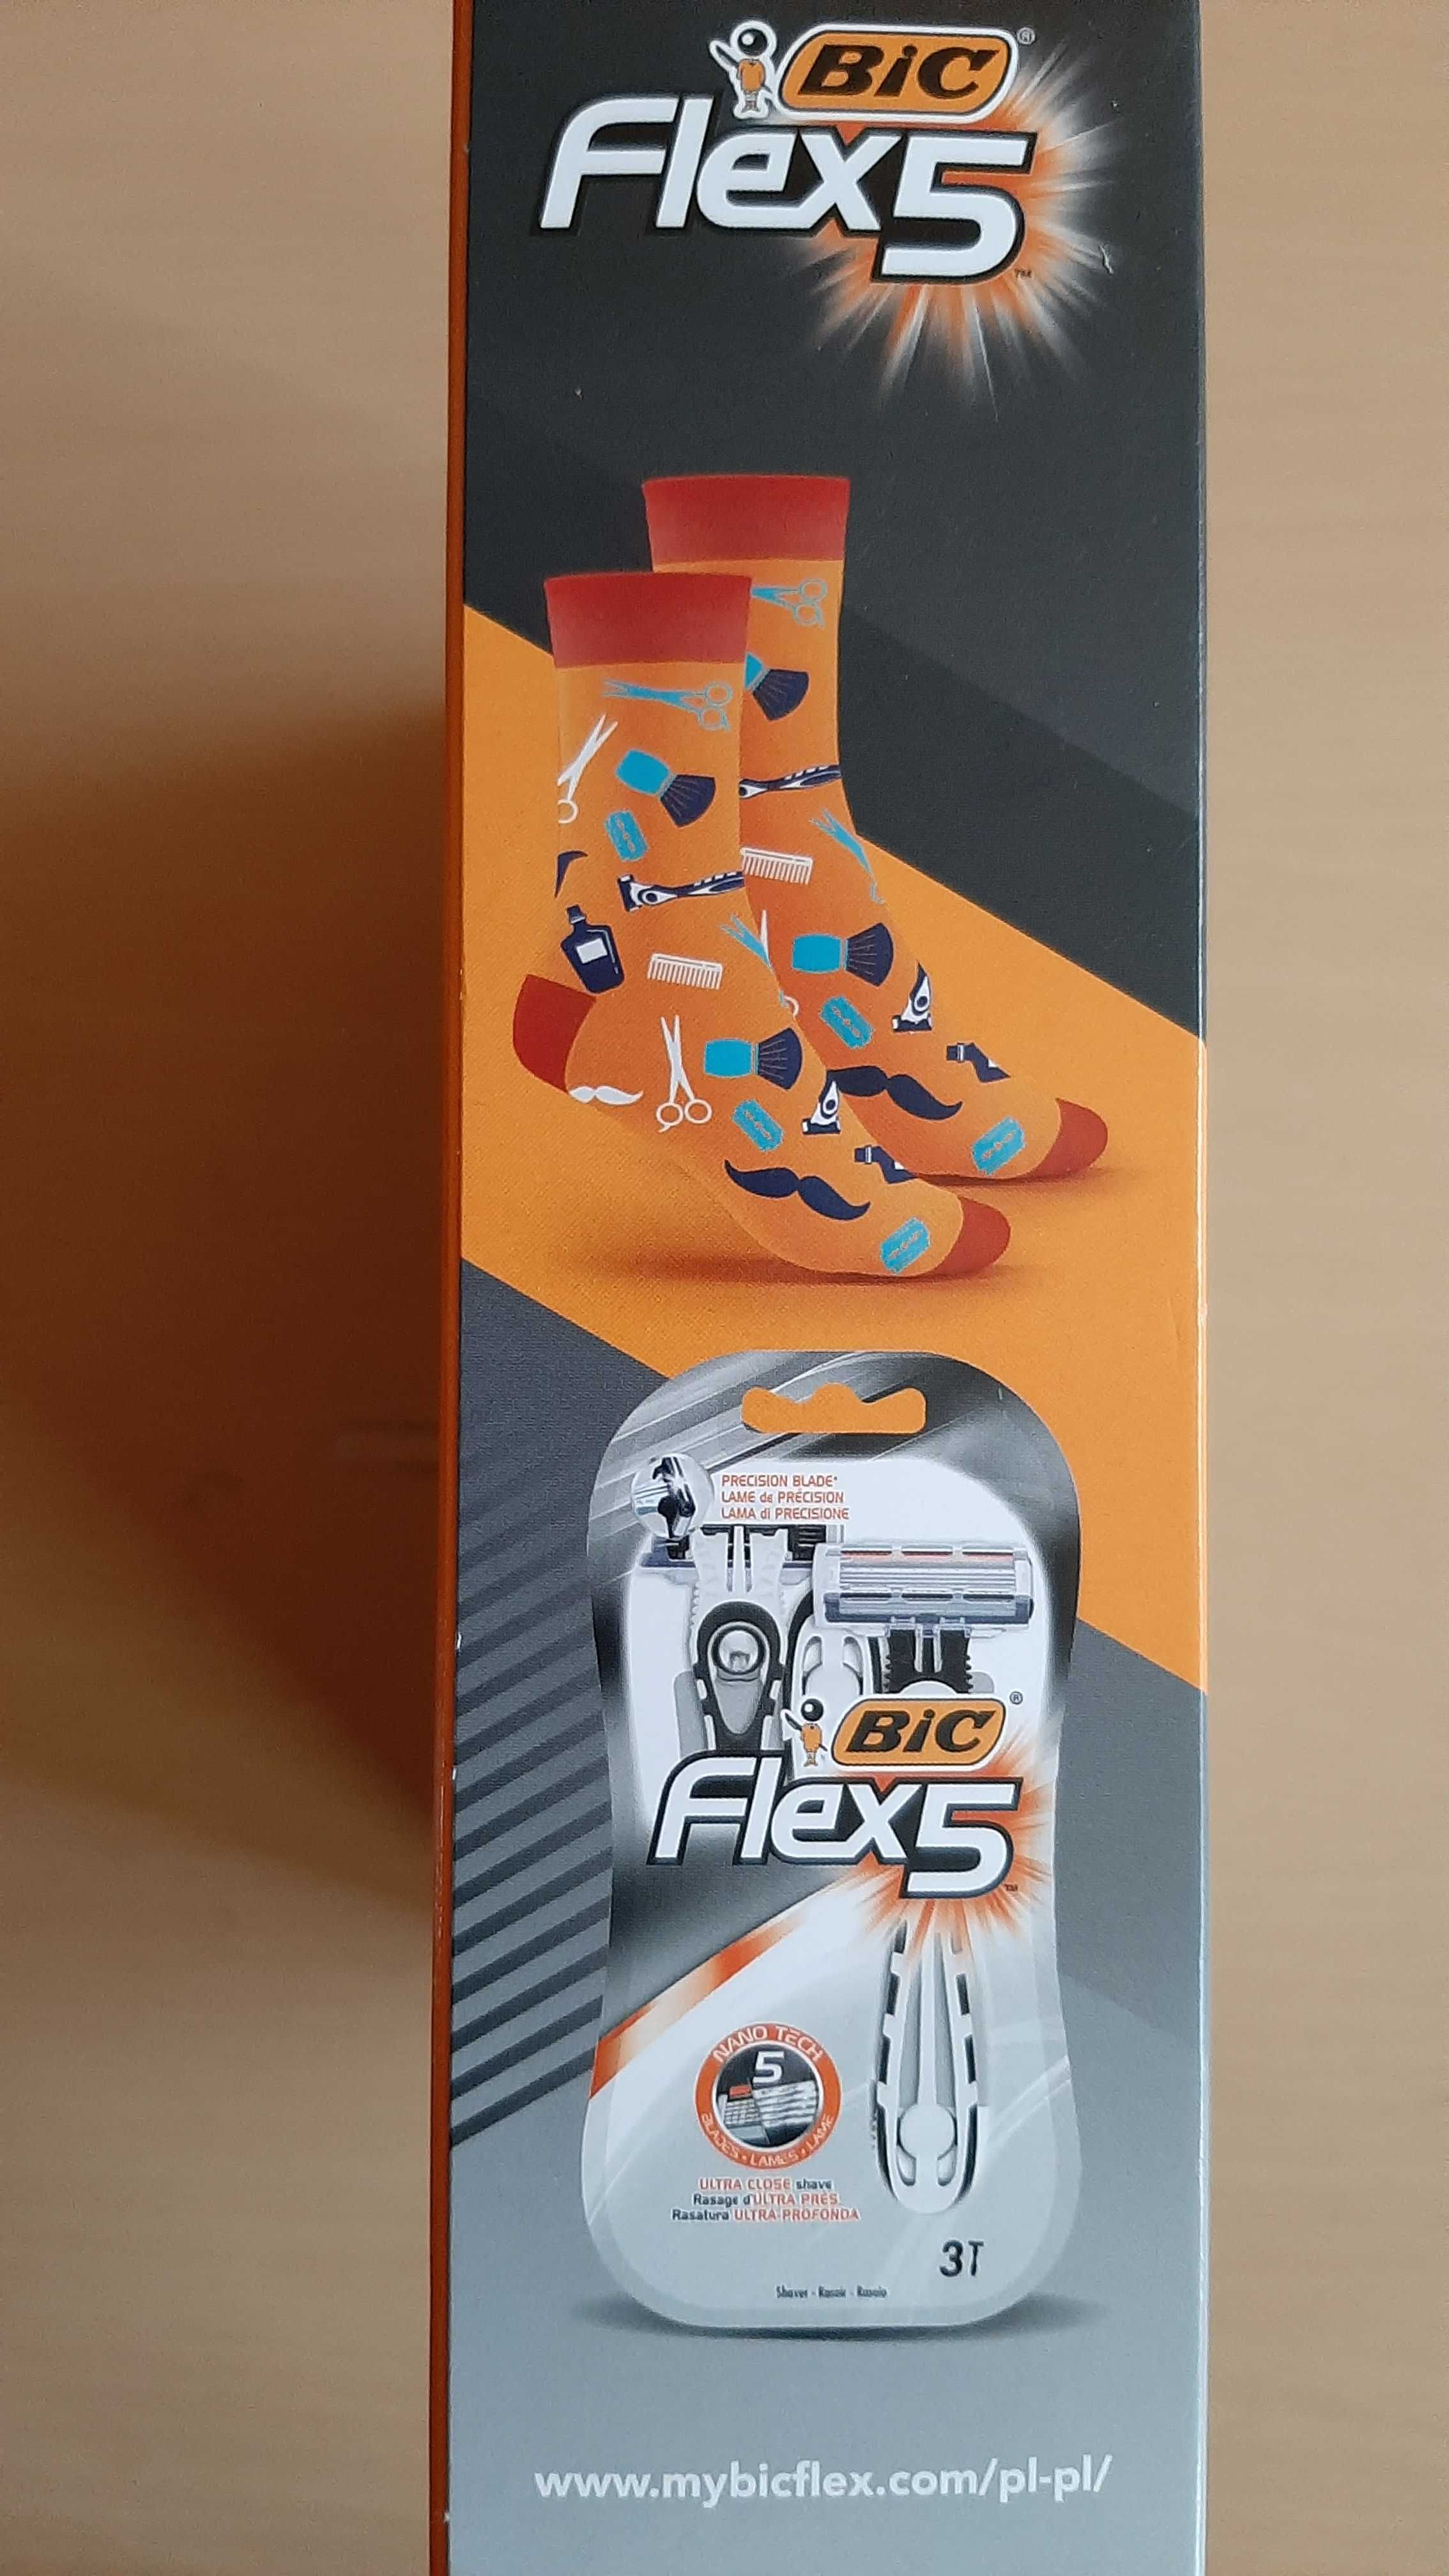 Zestaw Bic Flex 5 maszynka do golenia +skarpety mężczyzny Men chłopaka